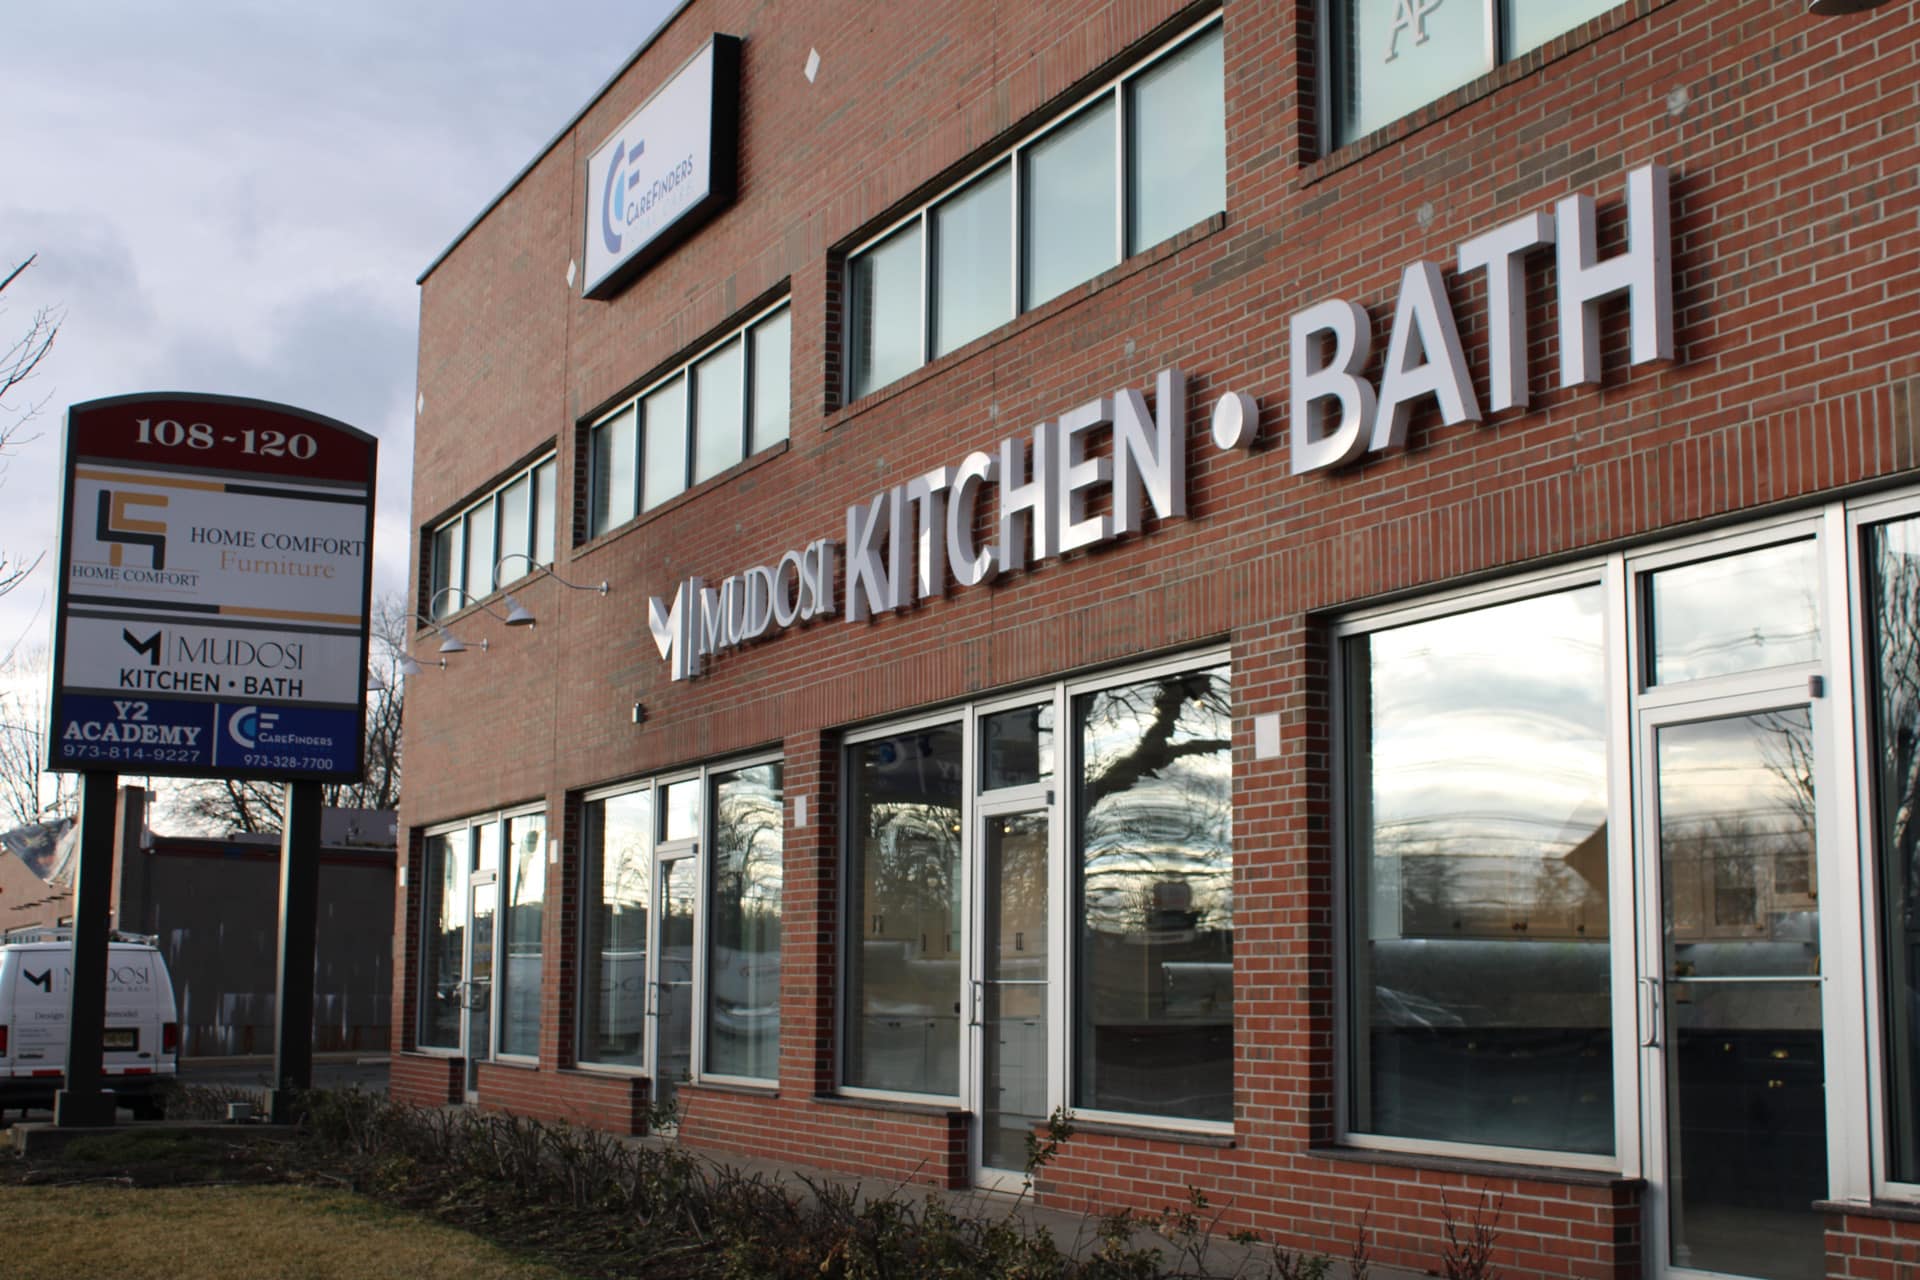 Mudosi Kitchen and Bath showroom building